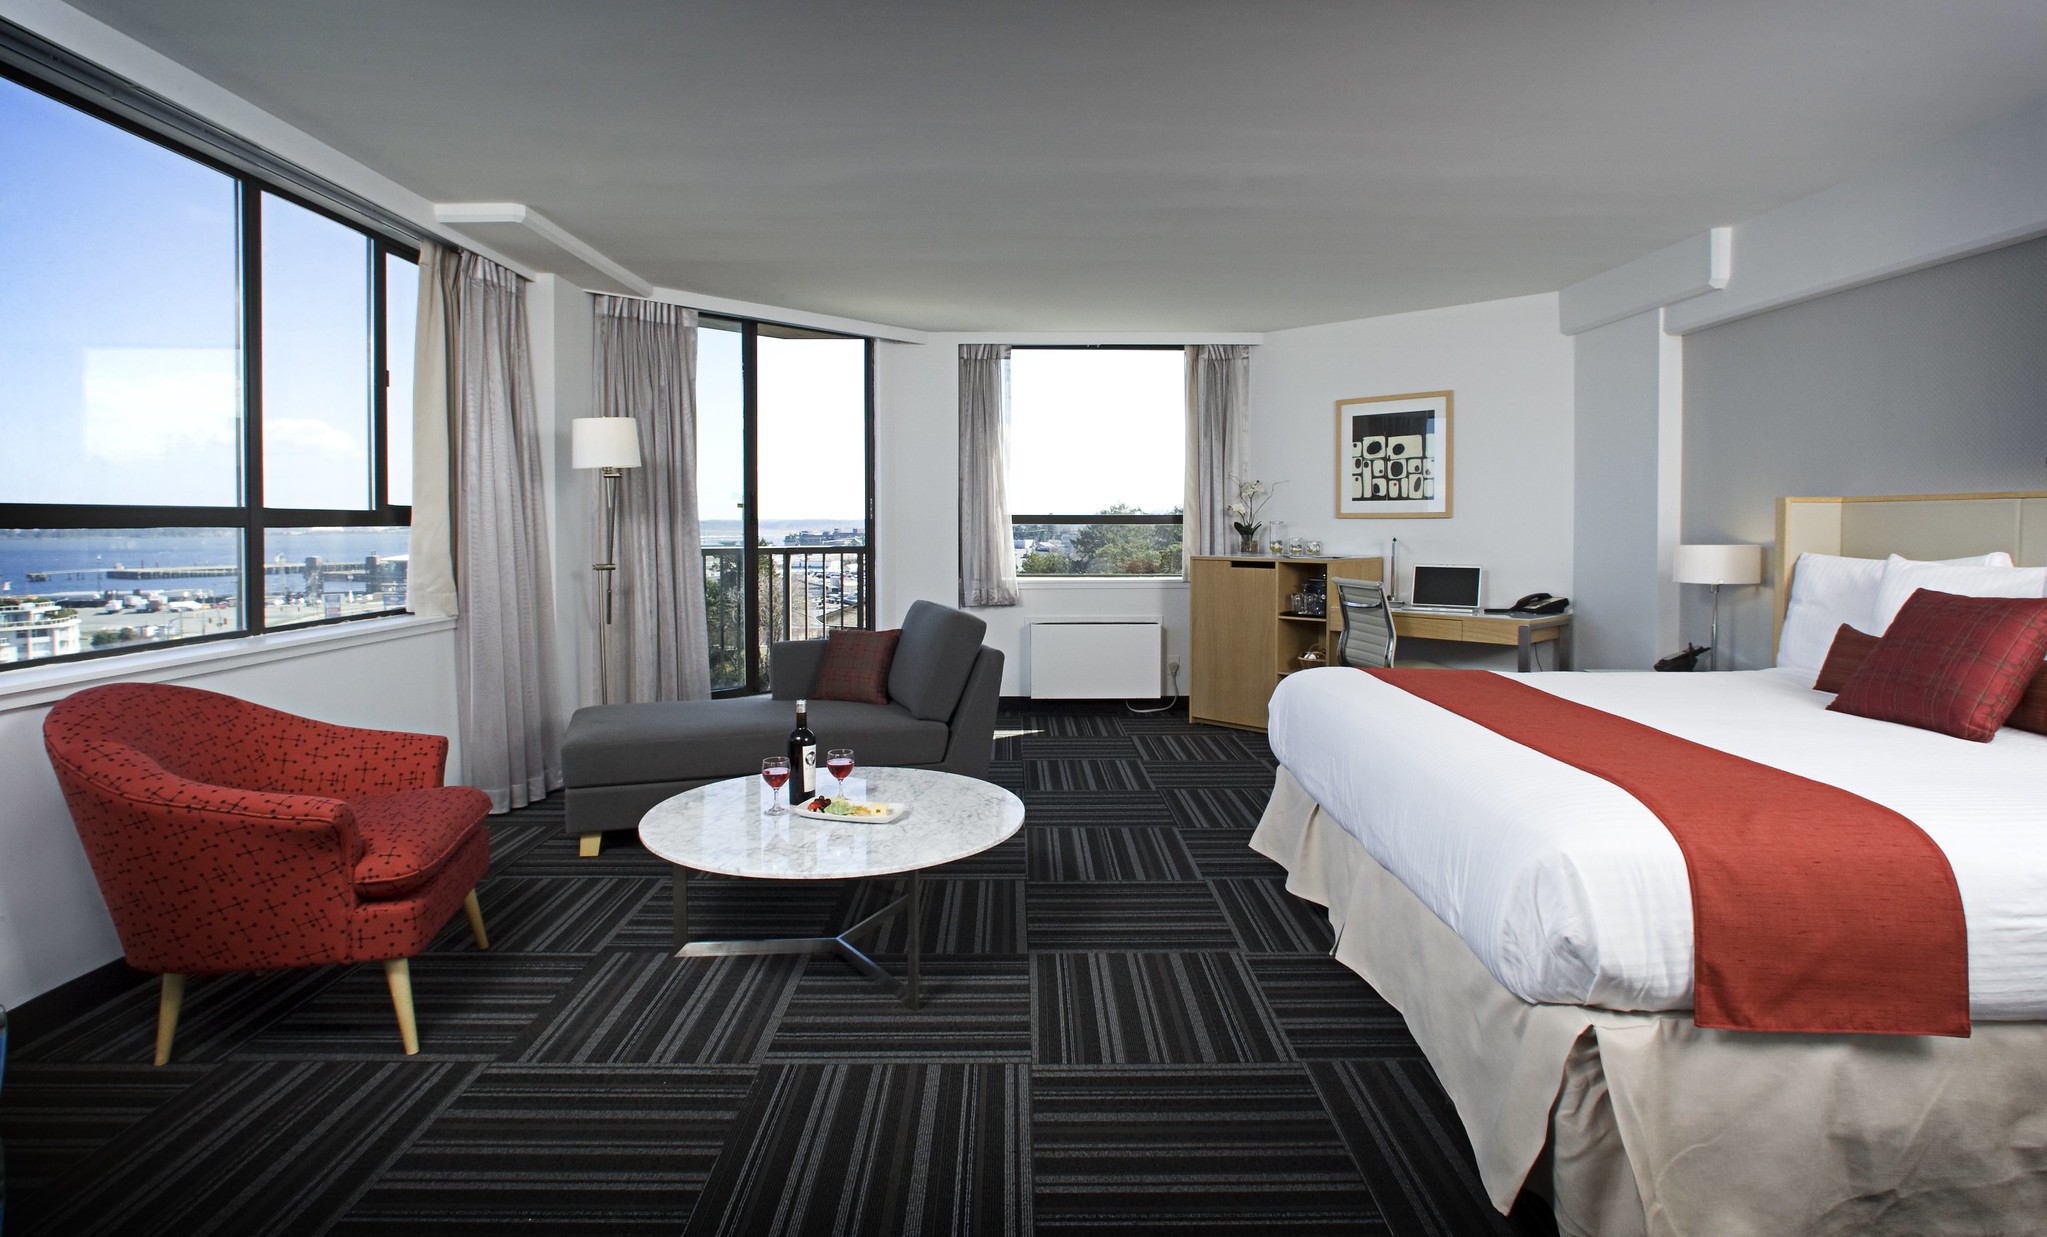 Una habitación de hotel con una cama grande, un sillón, una tumbona y un gran ventanal con vista al océano.